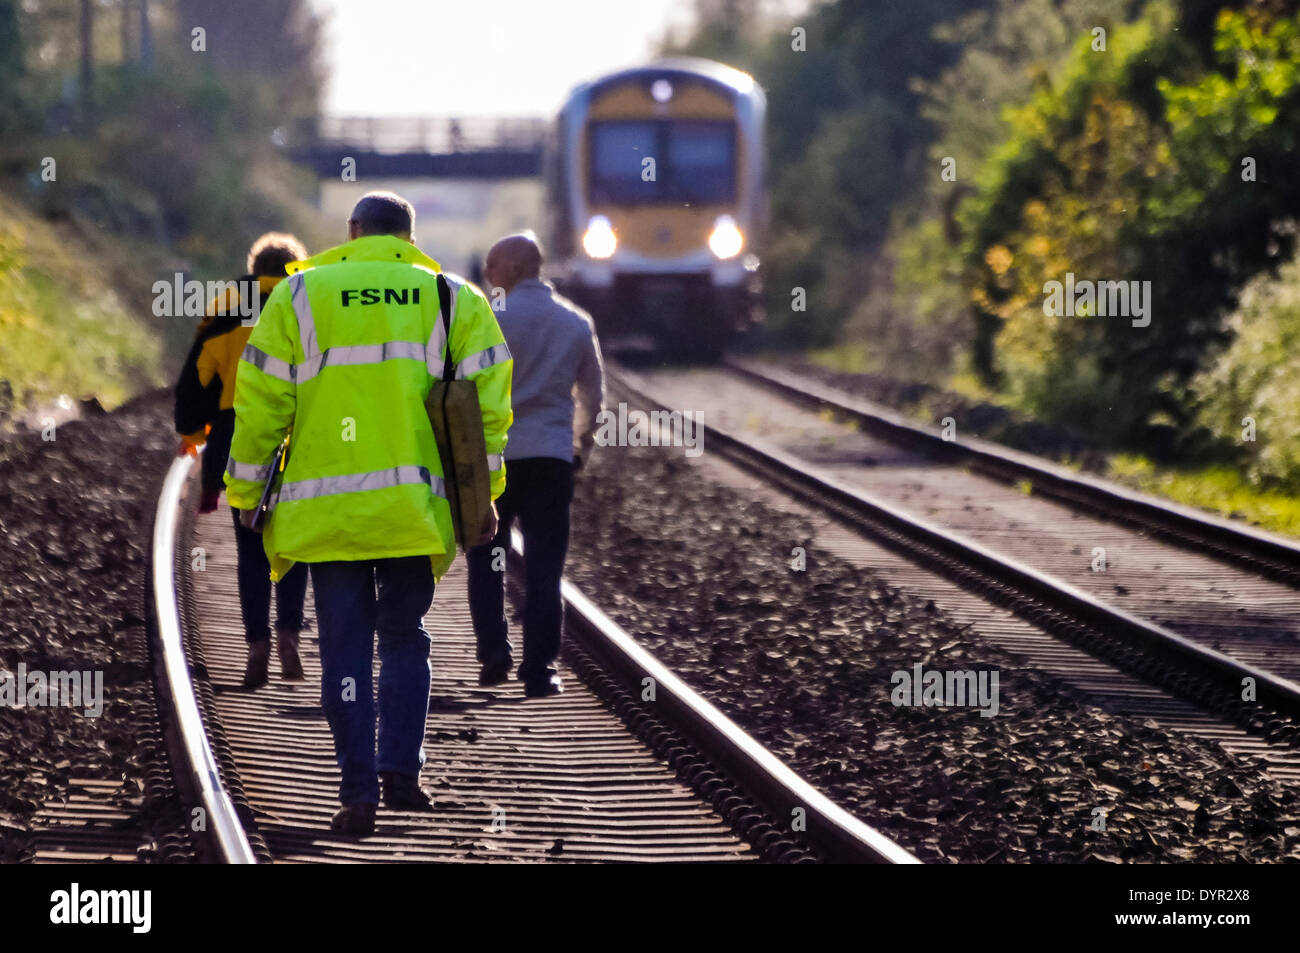 Lurgan, Irlande du Nord. 24 Apr 2014 - trois enquêteurs judiciaires à pied le long d'une voie ferrée à l'endroit où une personne a été tué après avoir été frappé par un train Crédit : Stephen Barnes/Alamy Live News Banque D'Images